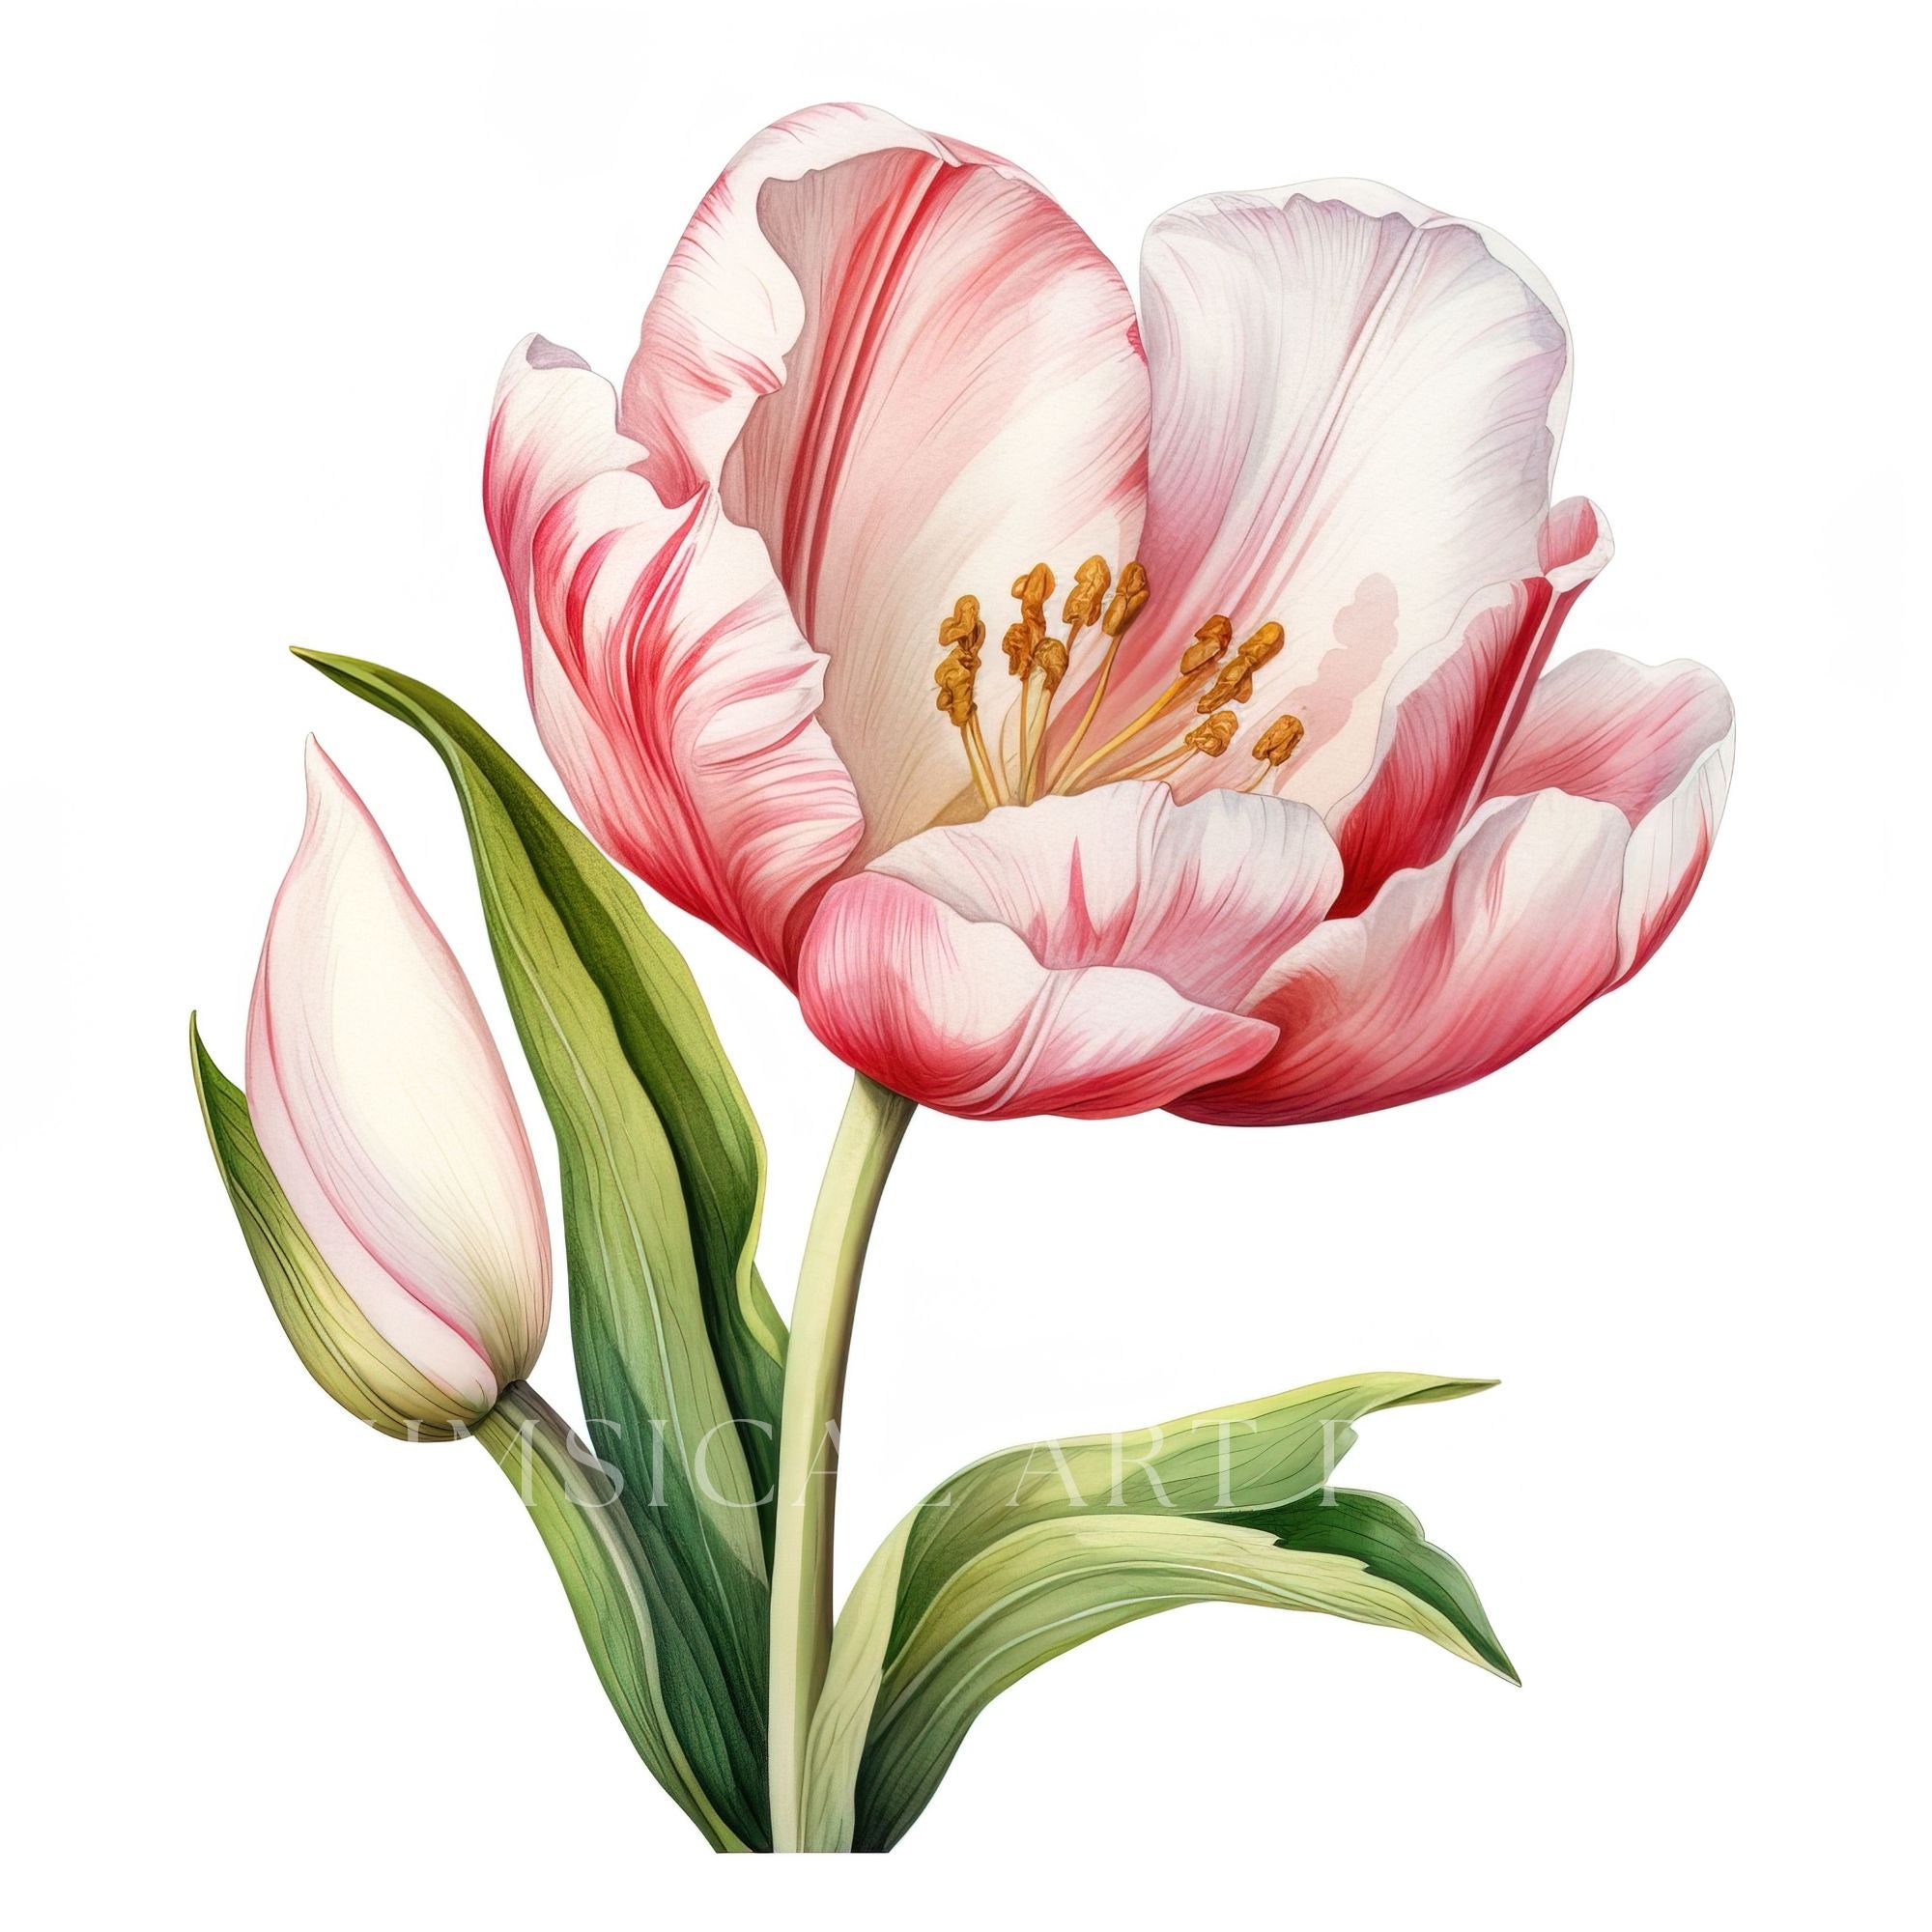 White Tulip Clipart, Bouquet Clipart, Watercolor Flowers, Commercial ...